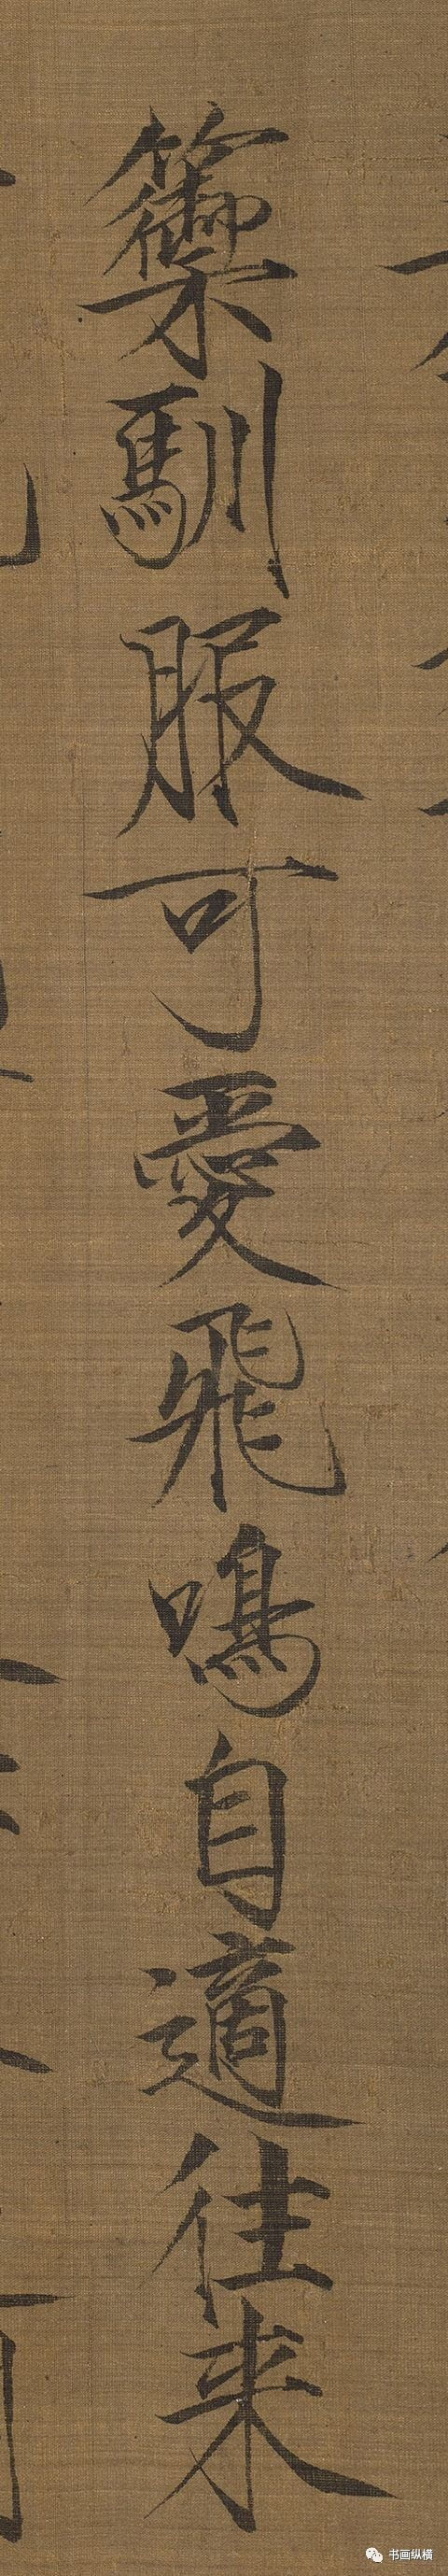 虽然赵佶的书法艺术以瘦金体为主要代表.